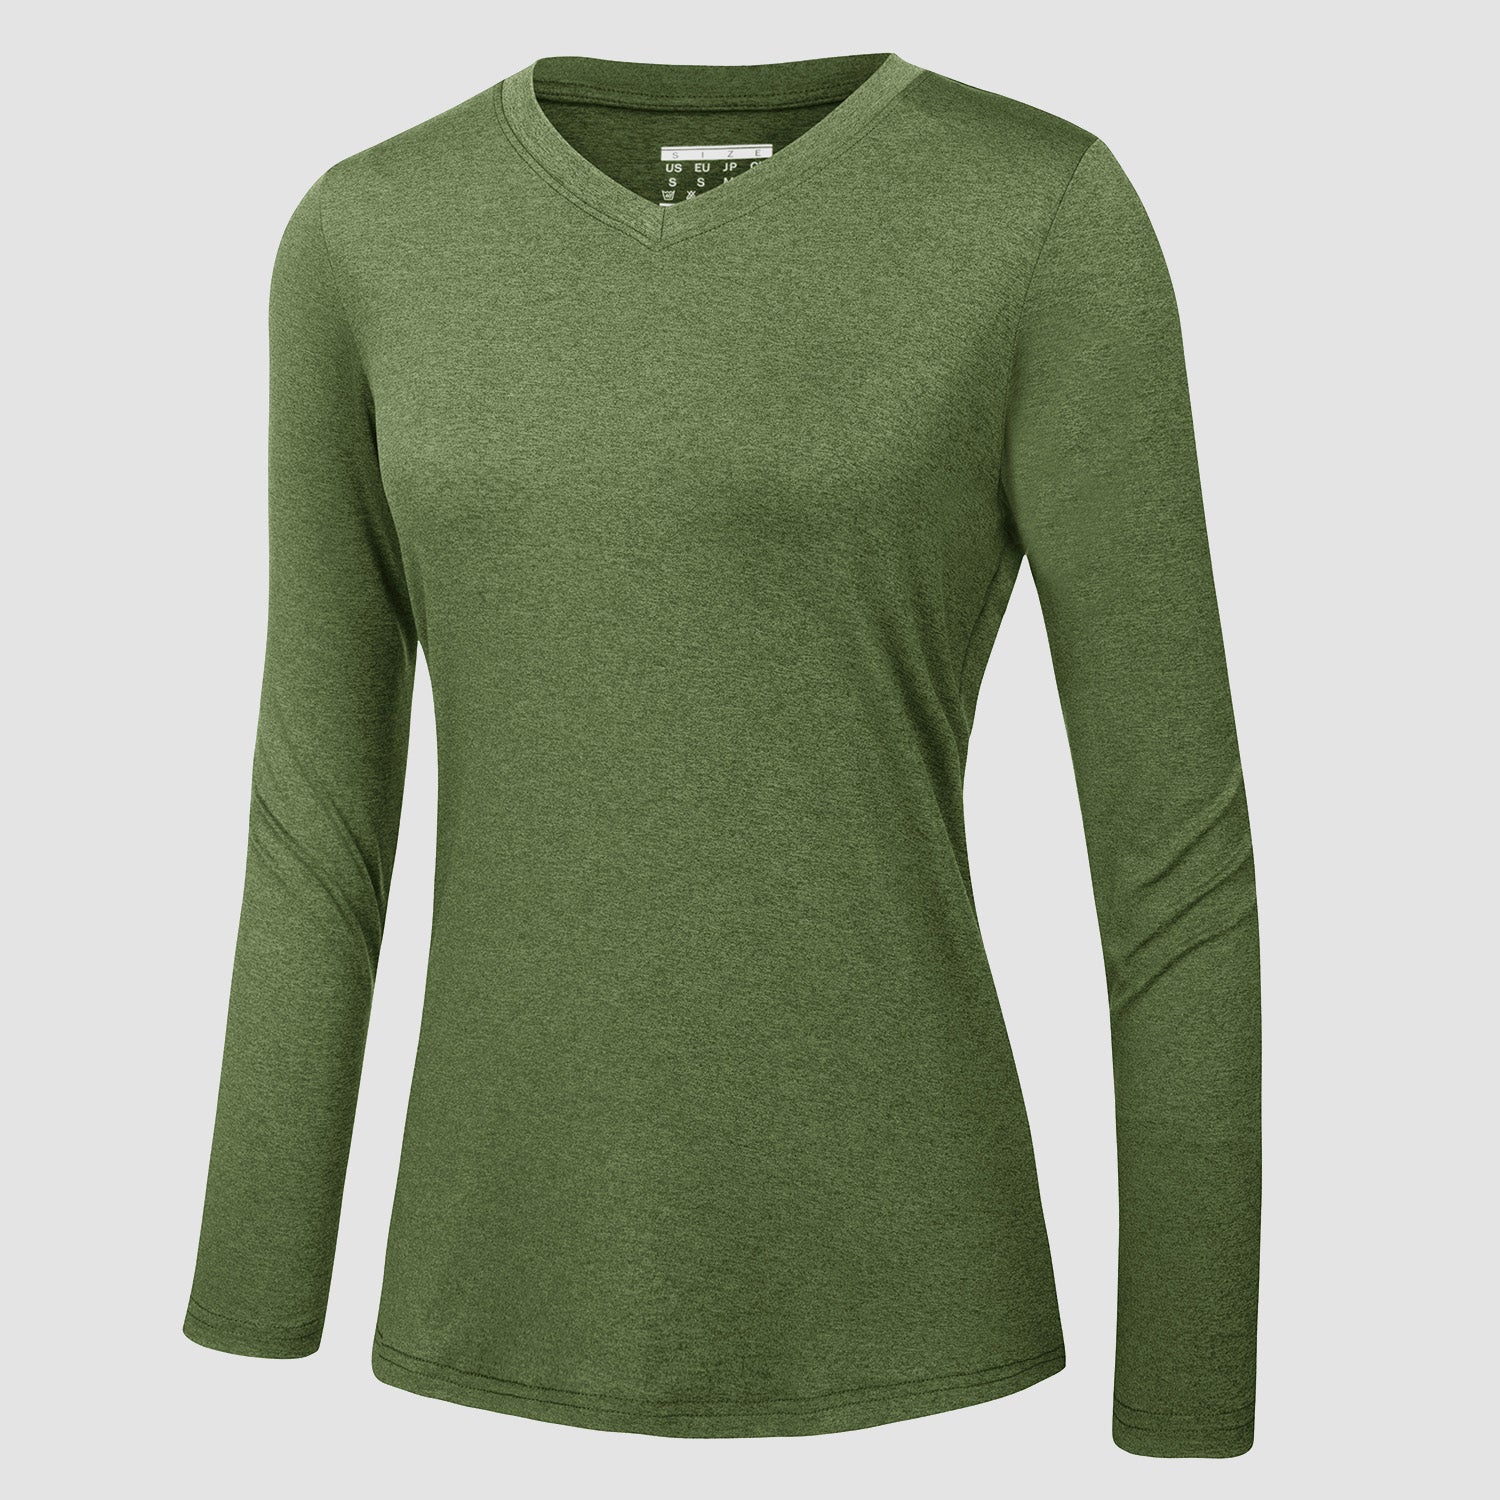 https://magcomsen.com/cdn/shop/products/Women_s-Long-Sleeve-Shirt-V-Neck-SPF-Shirts-UPF-50_-Quick-Dry-Workout-Hiking-Tee-Shirts-Rashguard_17.jpg?v=1666680575&width=1500